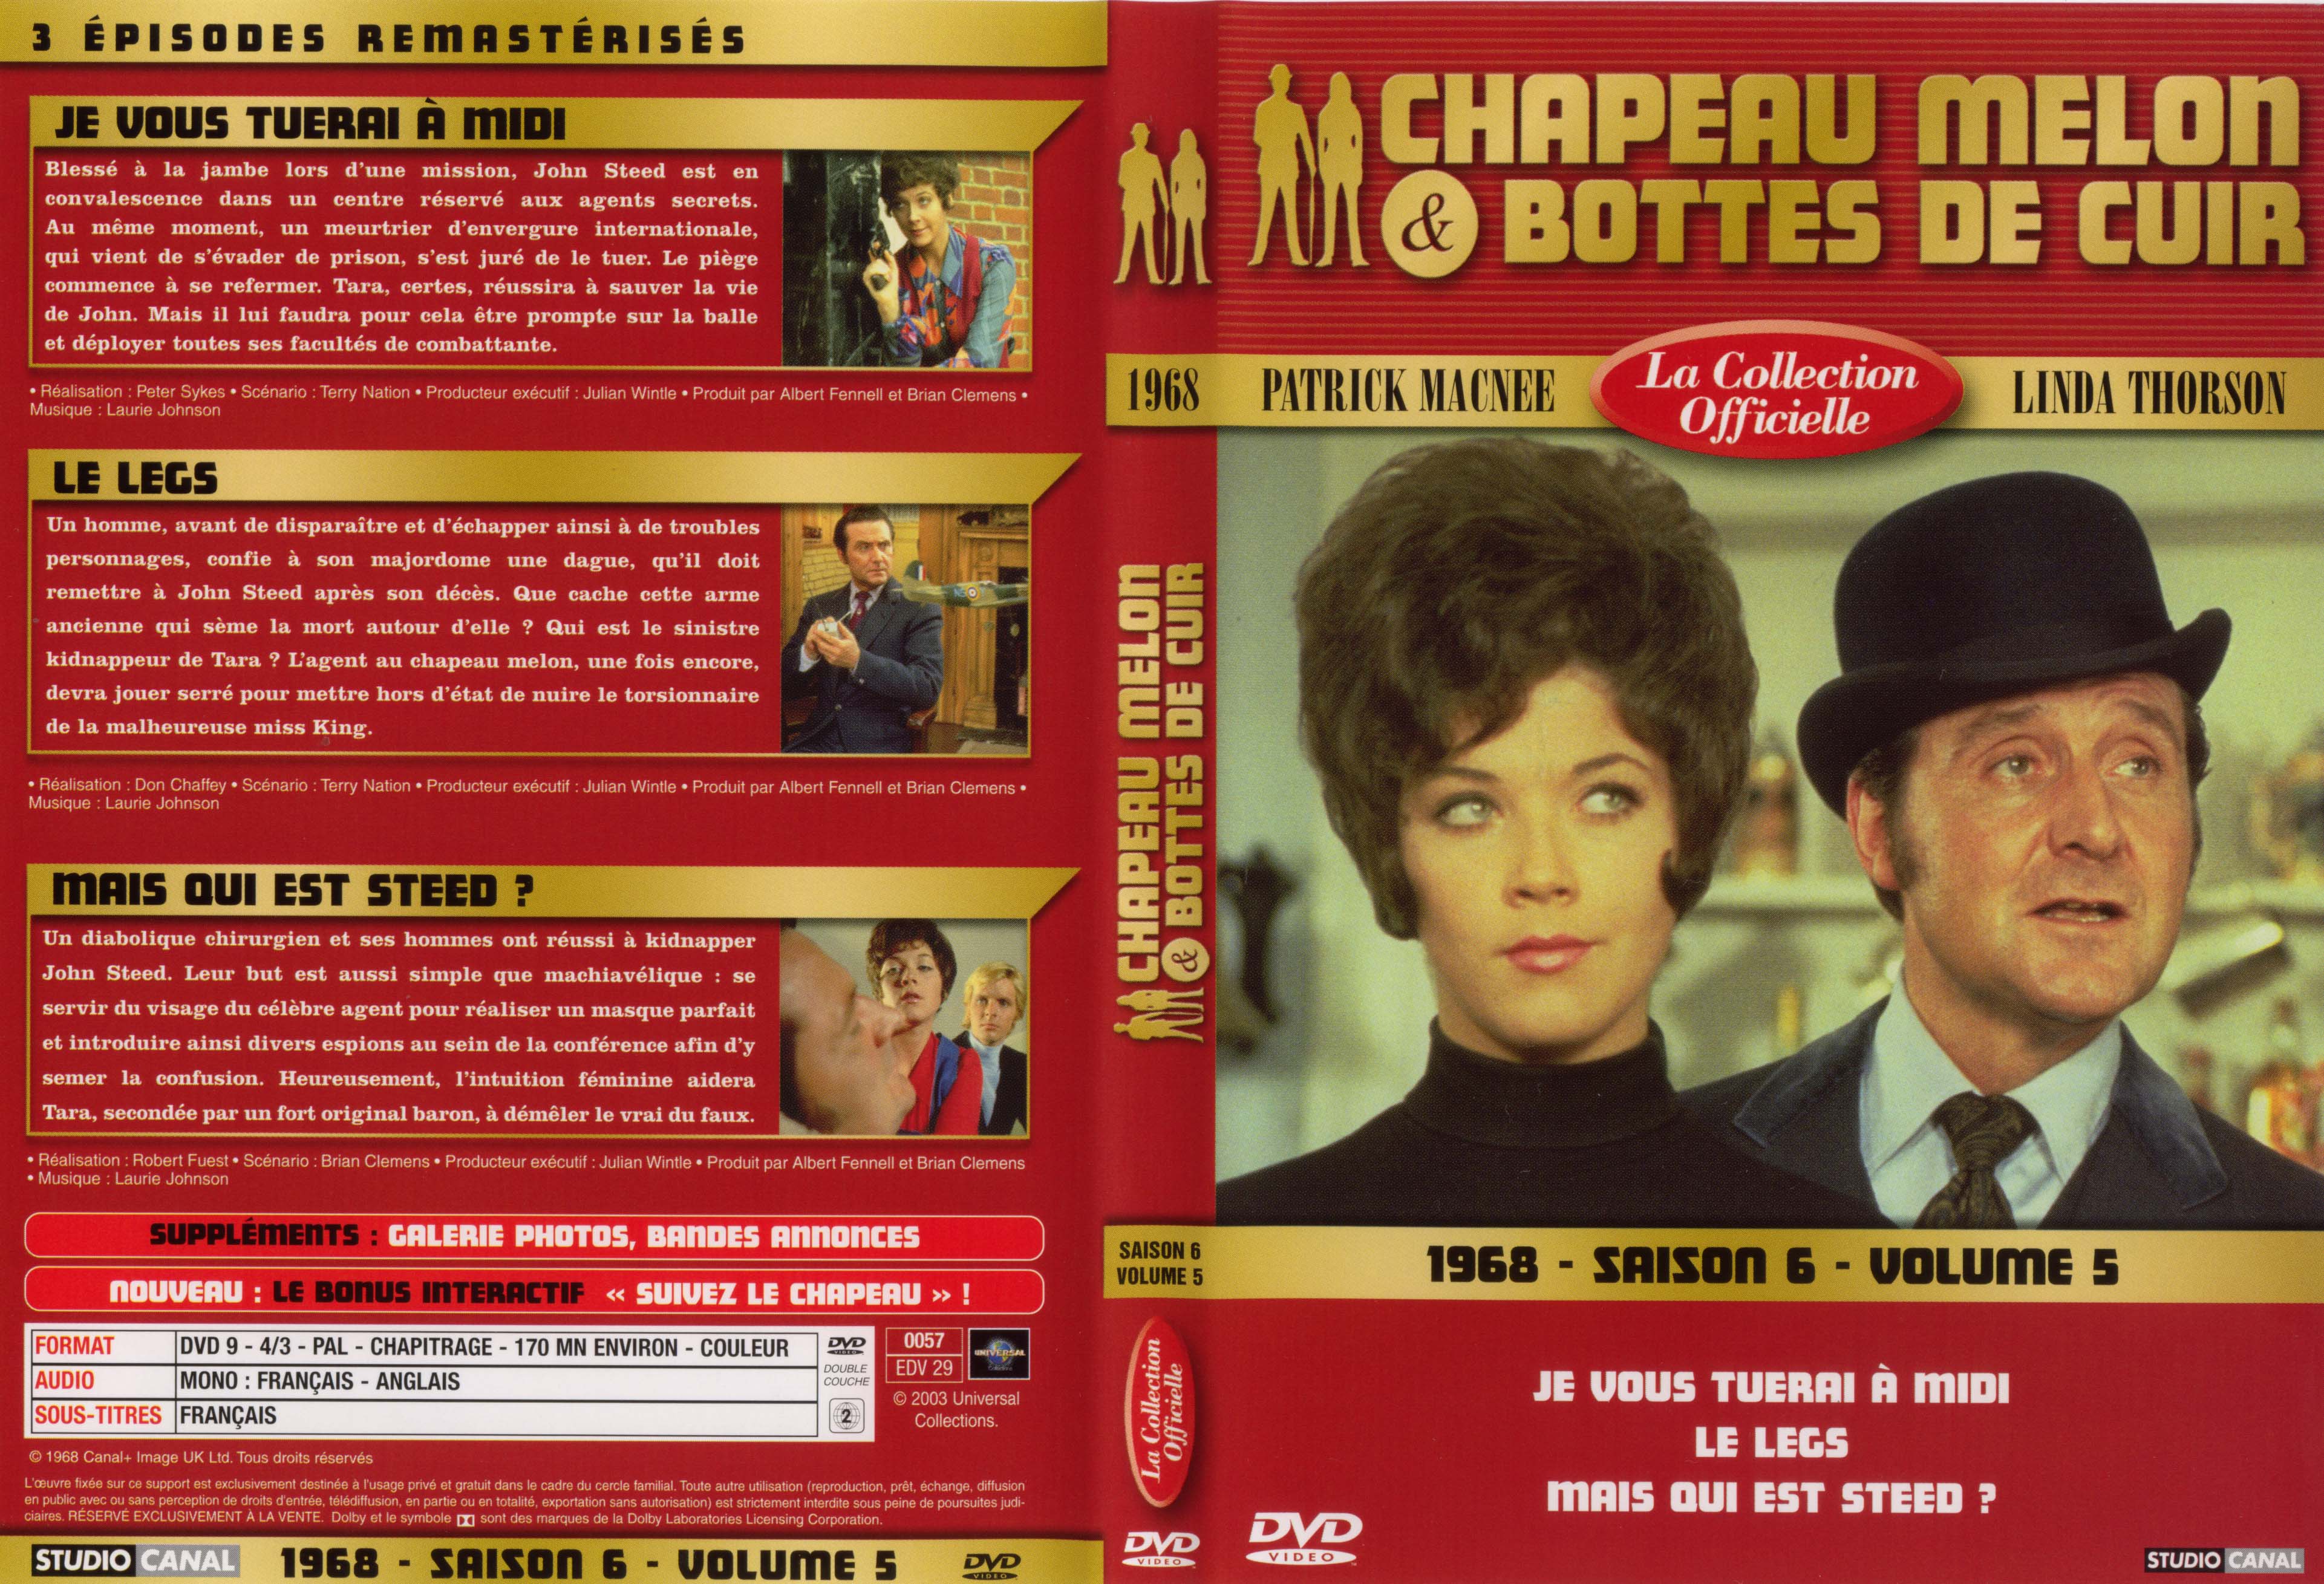 Jaquette DVD Chapeau melon et bottes de cuir 1968 saison 6 vol 5